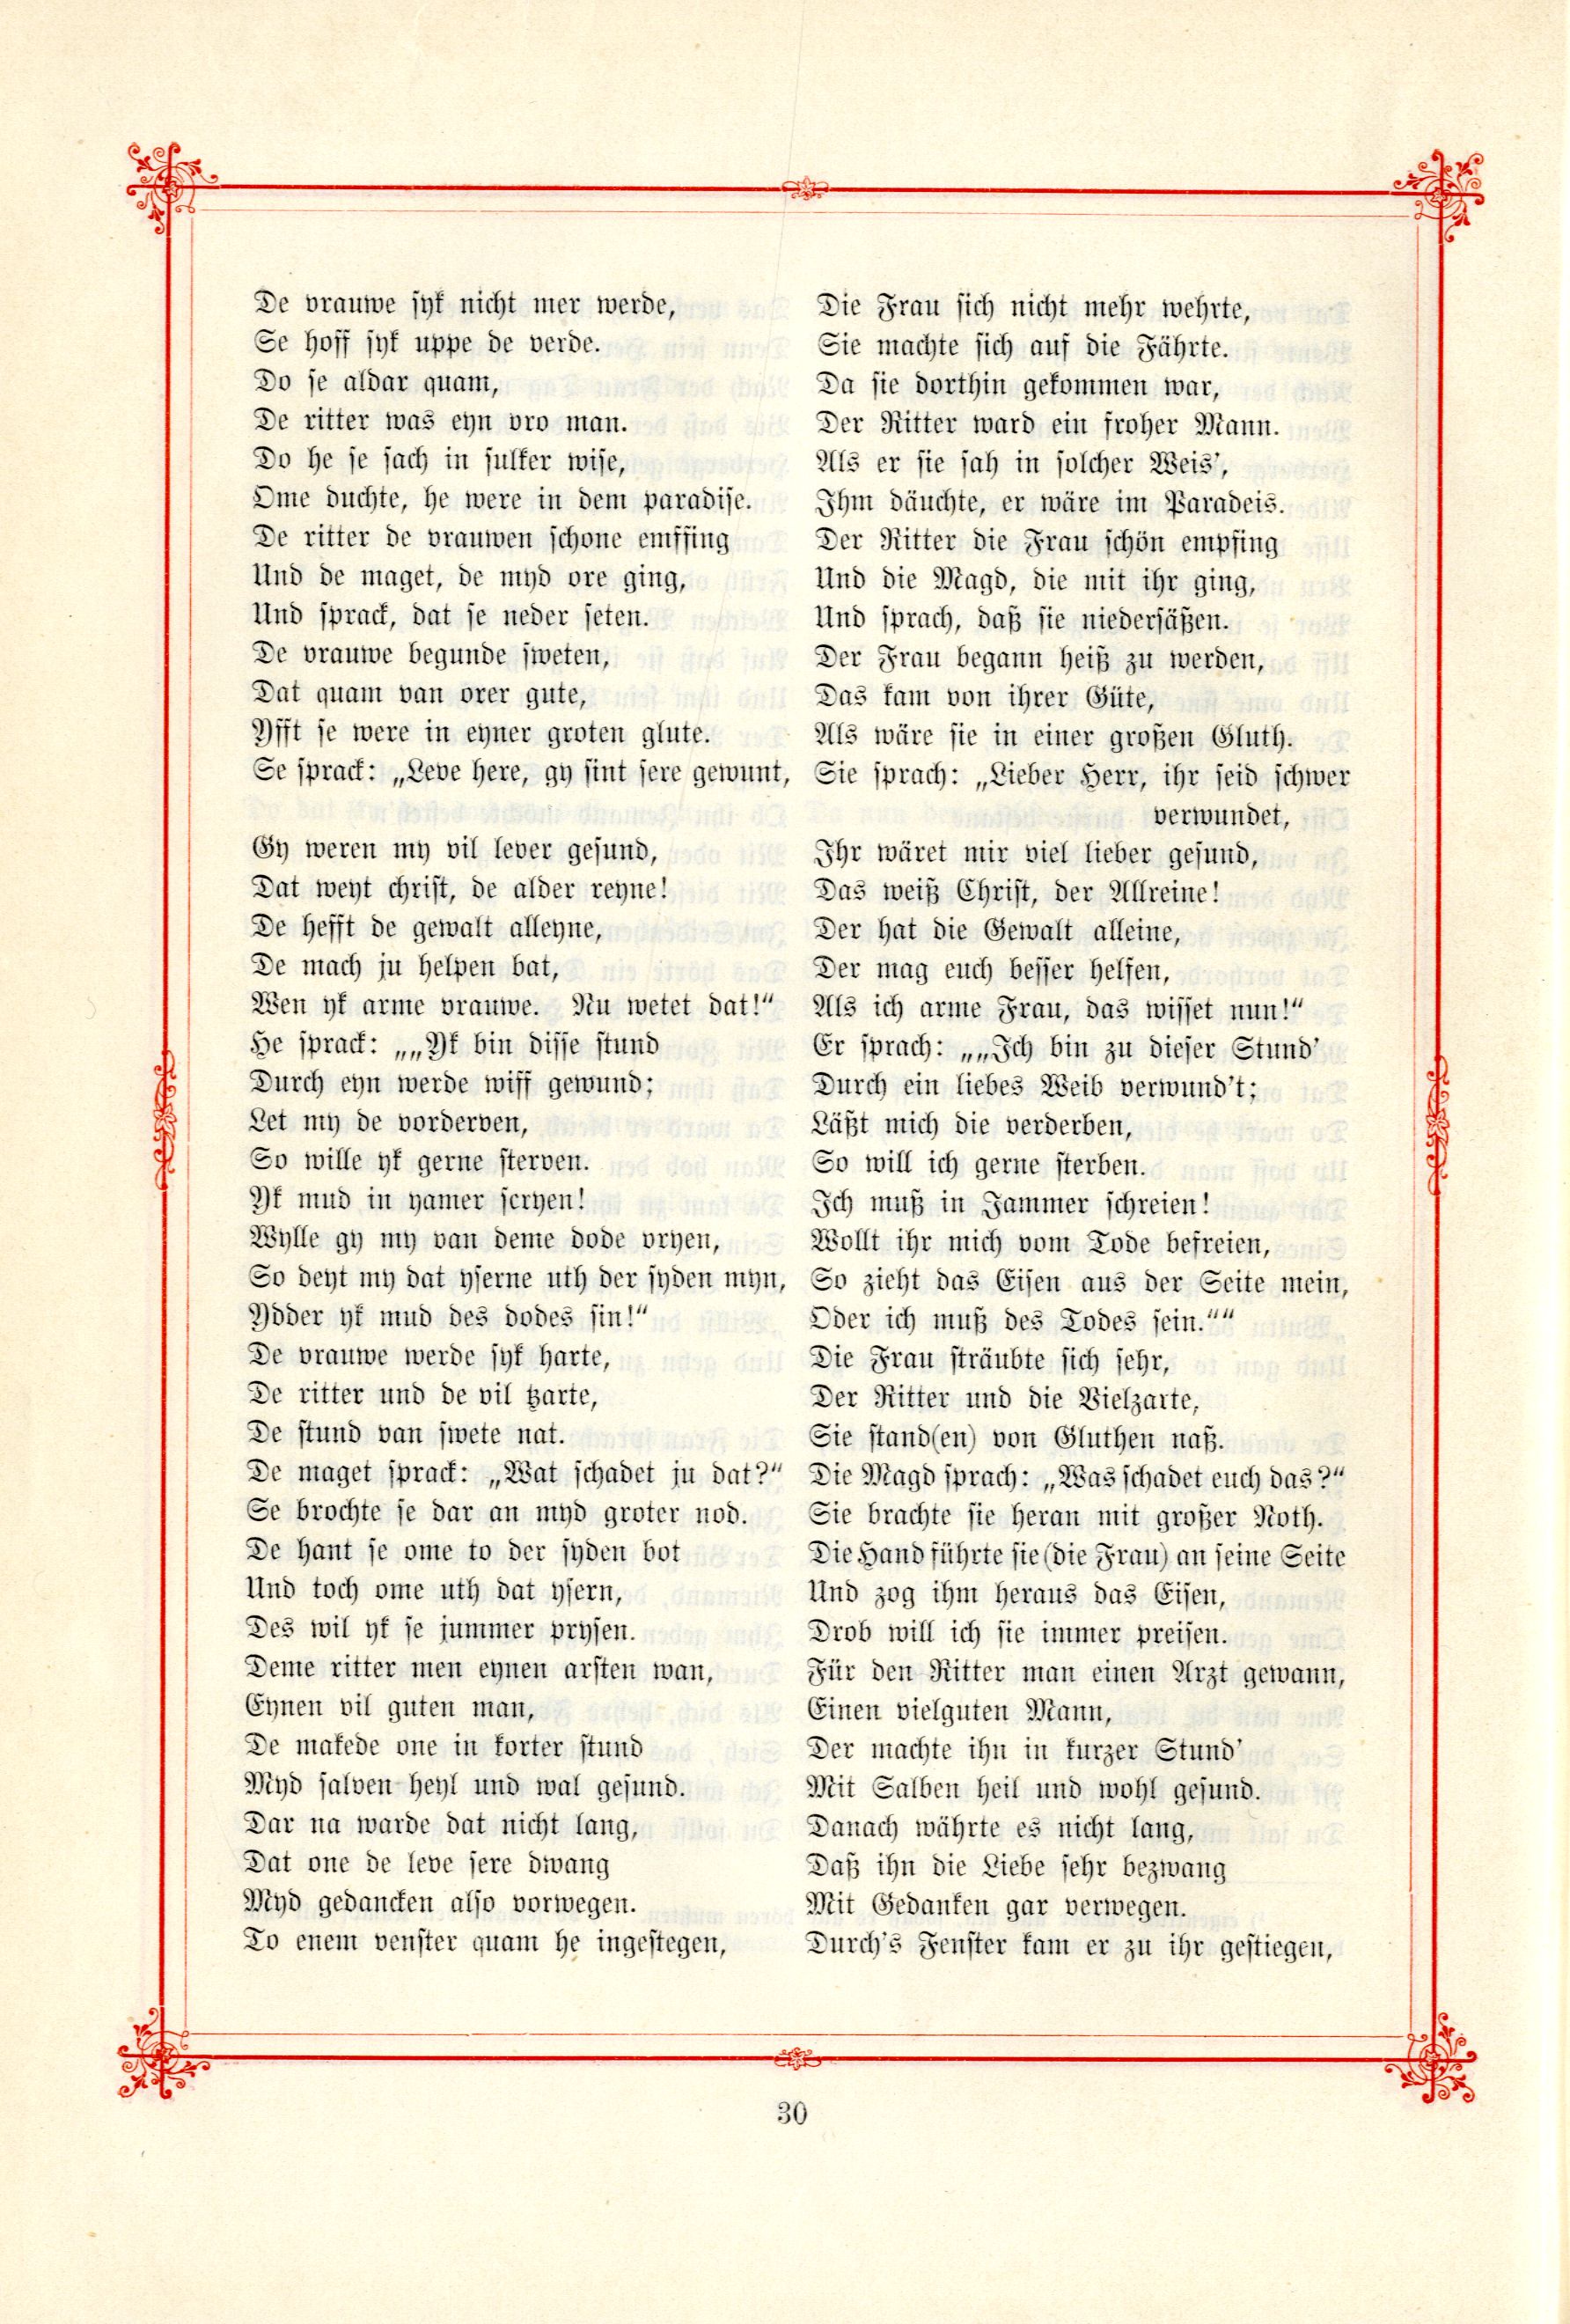 Das Baltische Dichterbuch (1895) | 76. (30) Main body of text